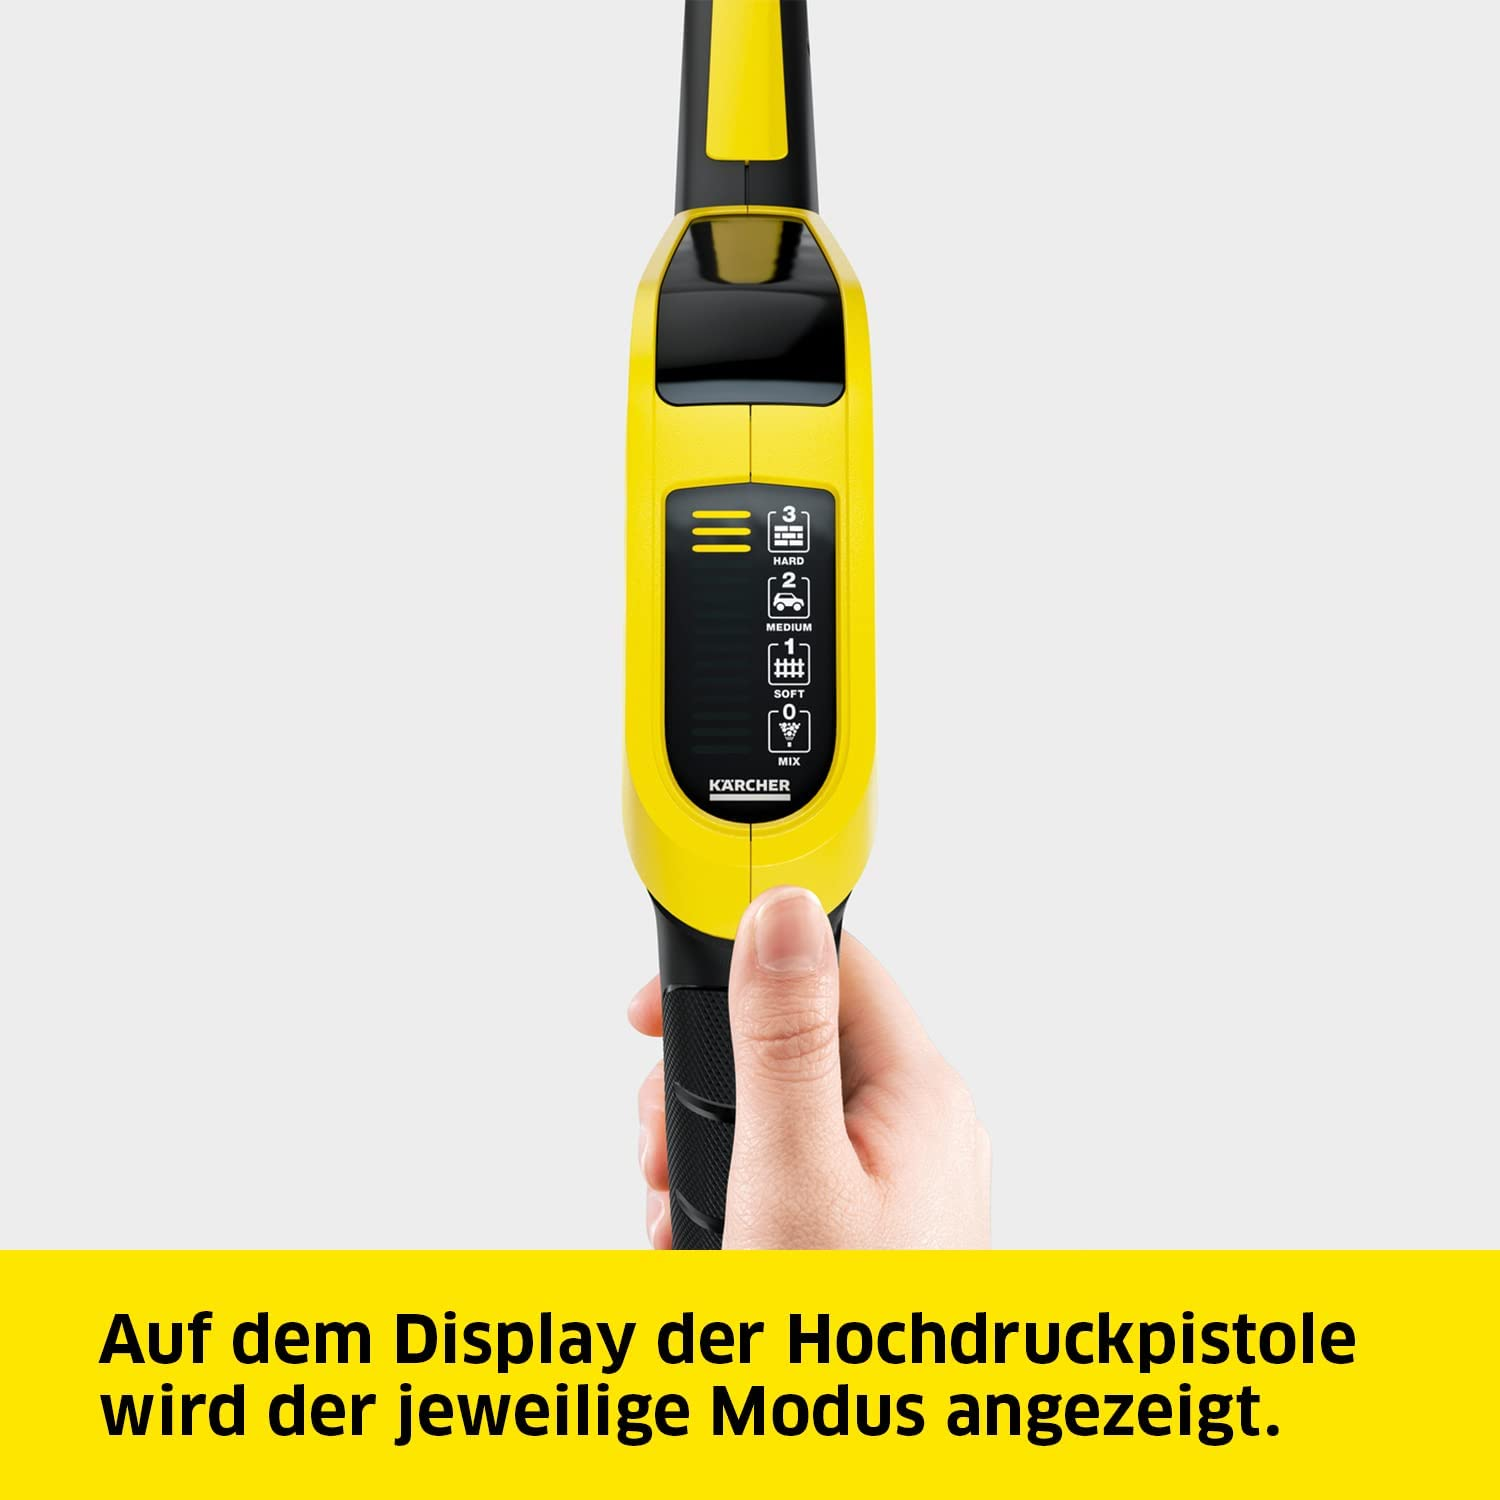 Home K5 KÄRCHER Premium Control gelb Smart Hochdruckreiniger,